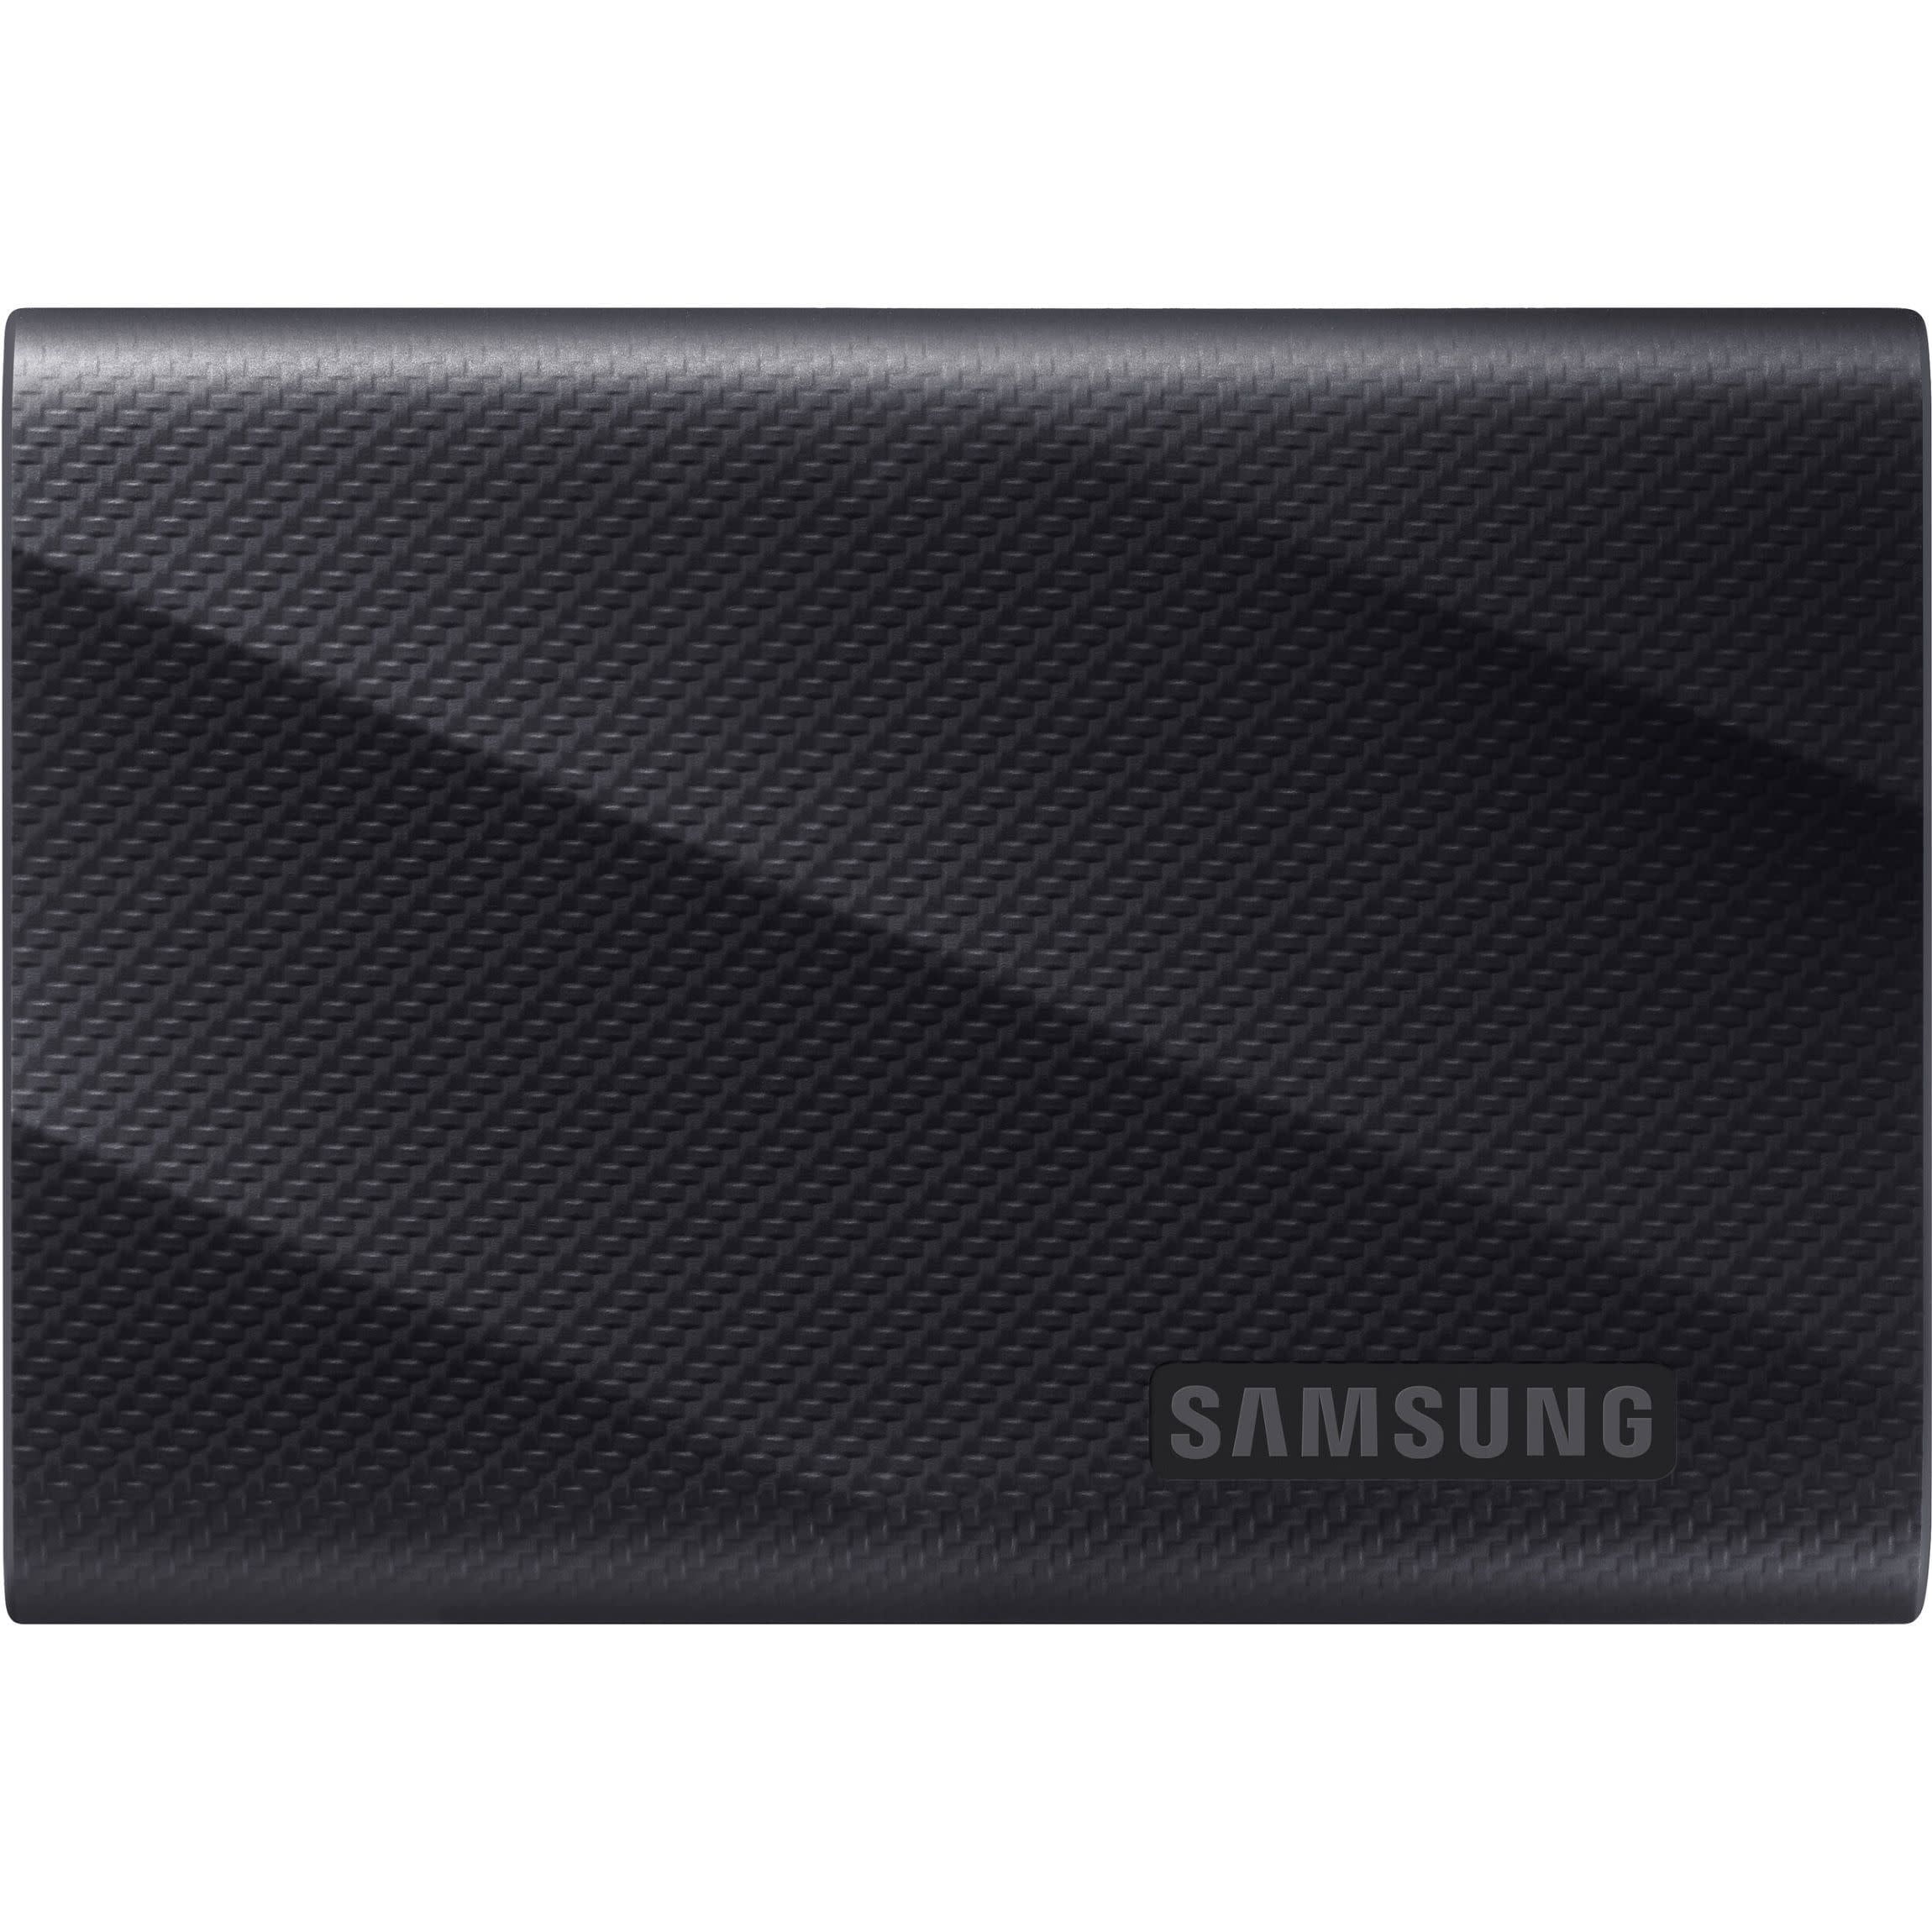 Portable SSD T9 USB 3.2 Gen2x2 4TB (Black)